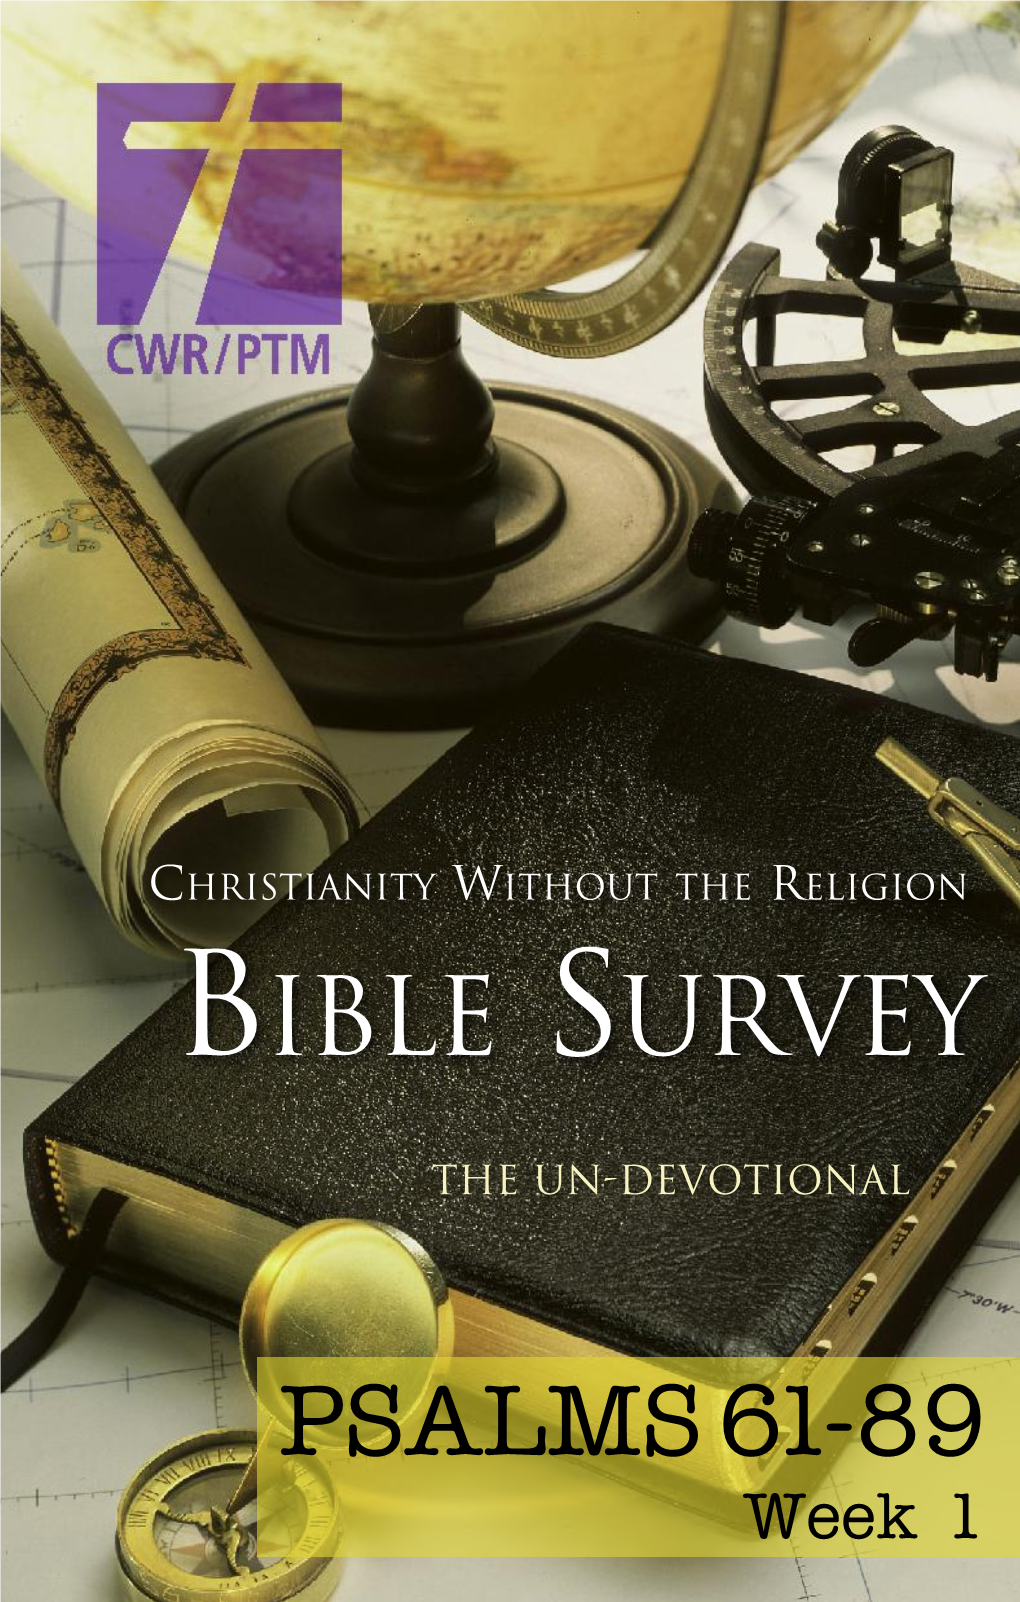 Bible Survey